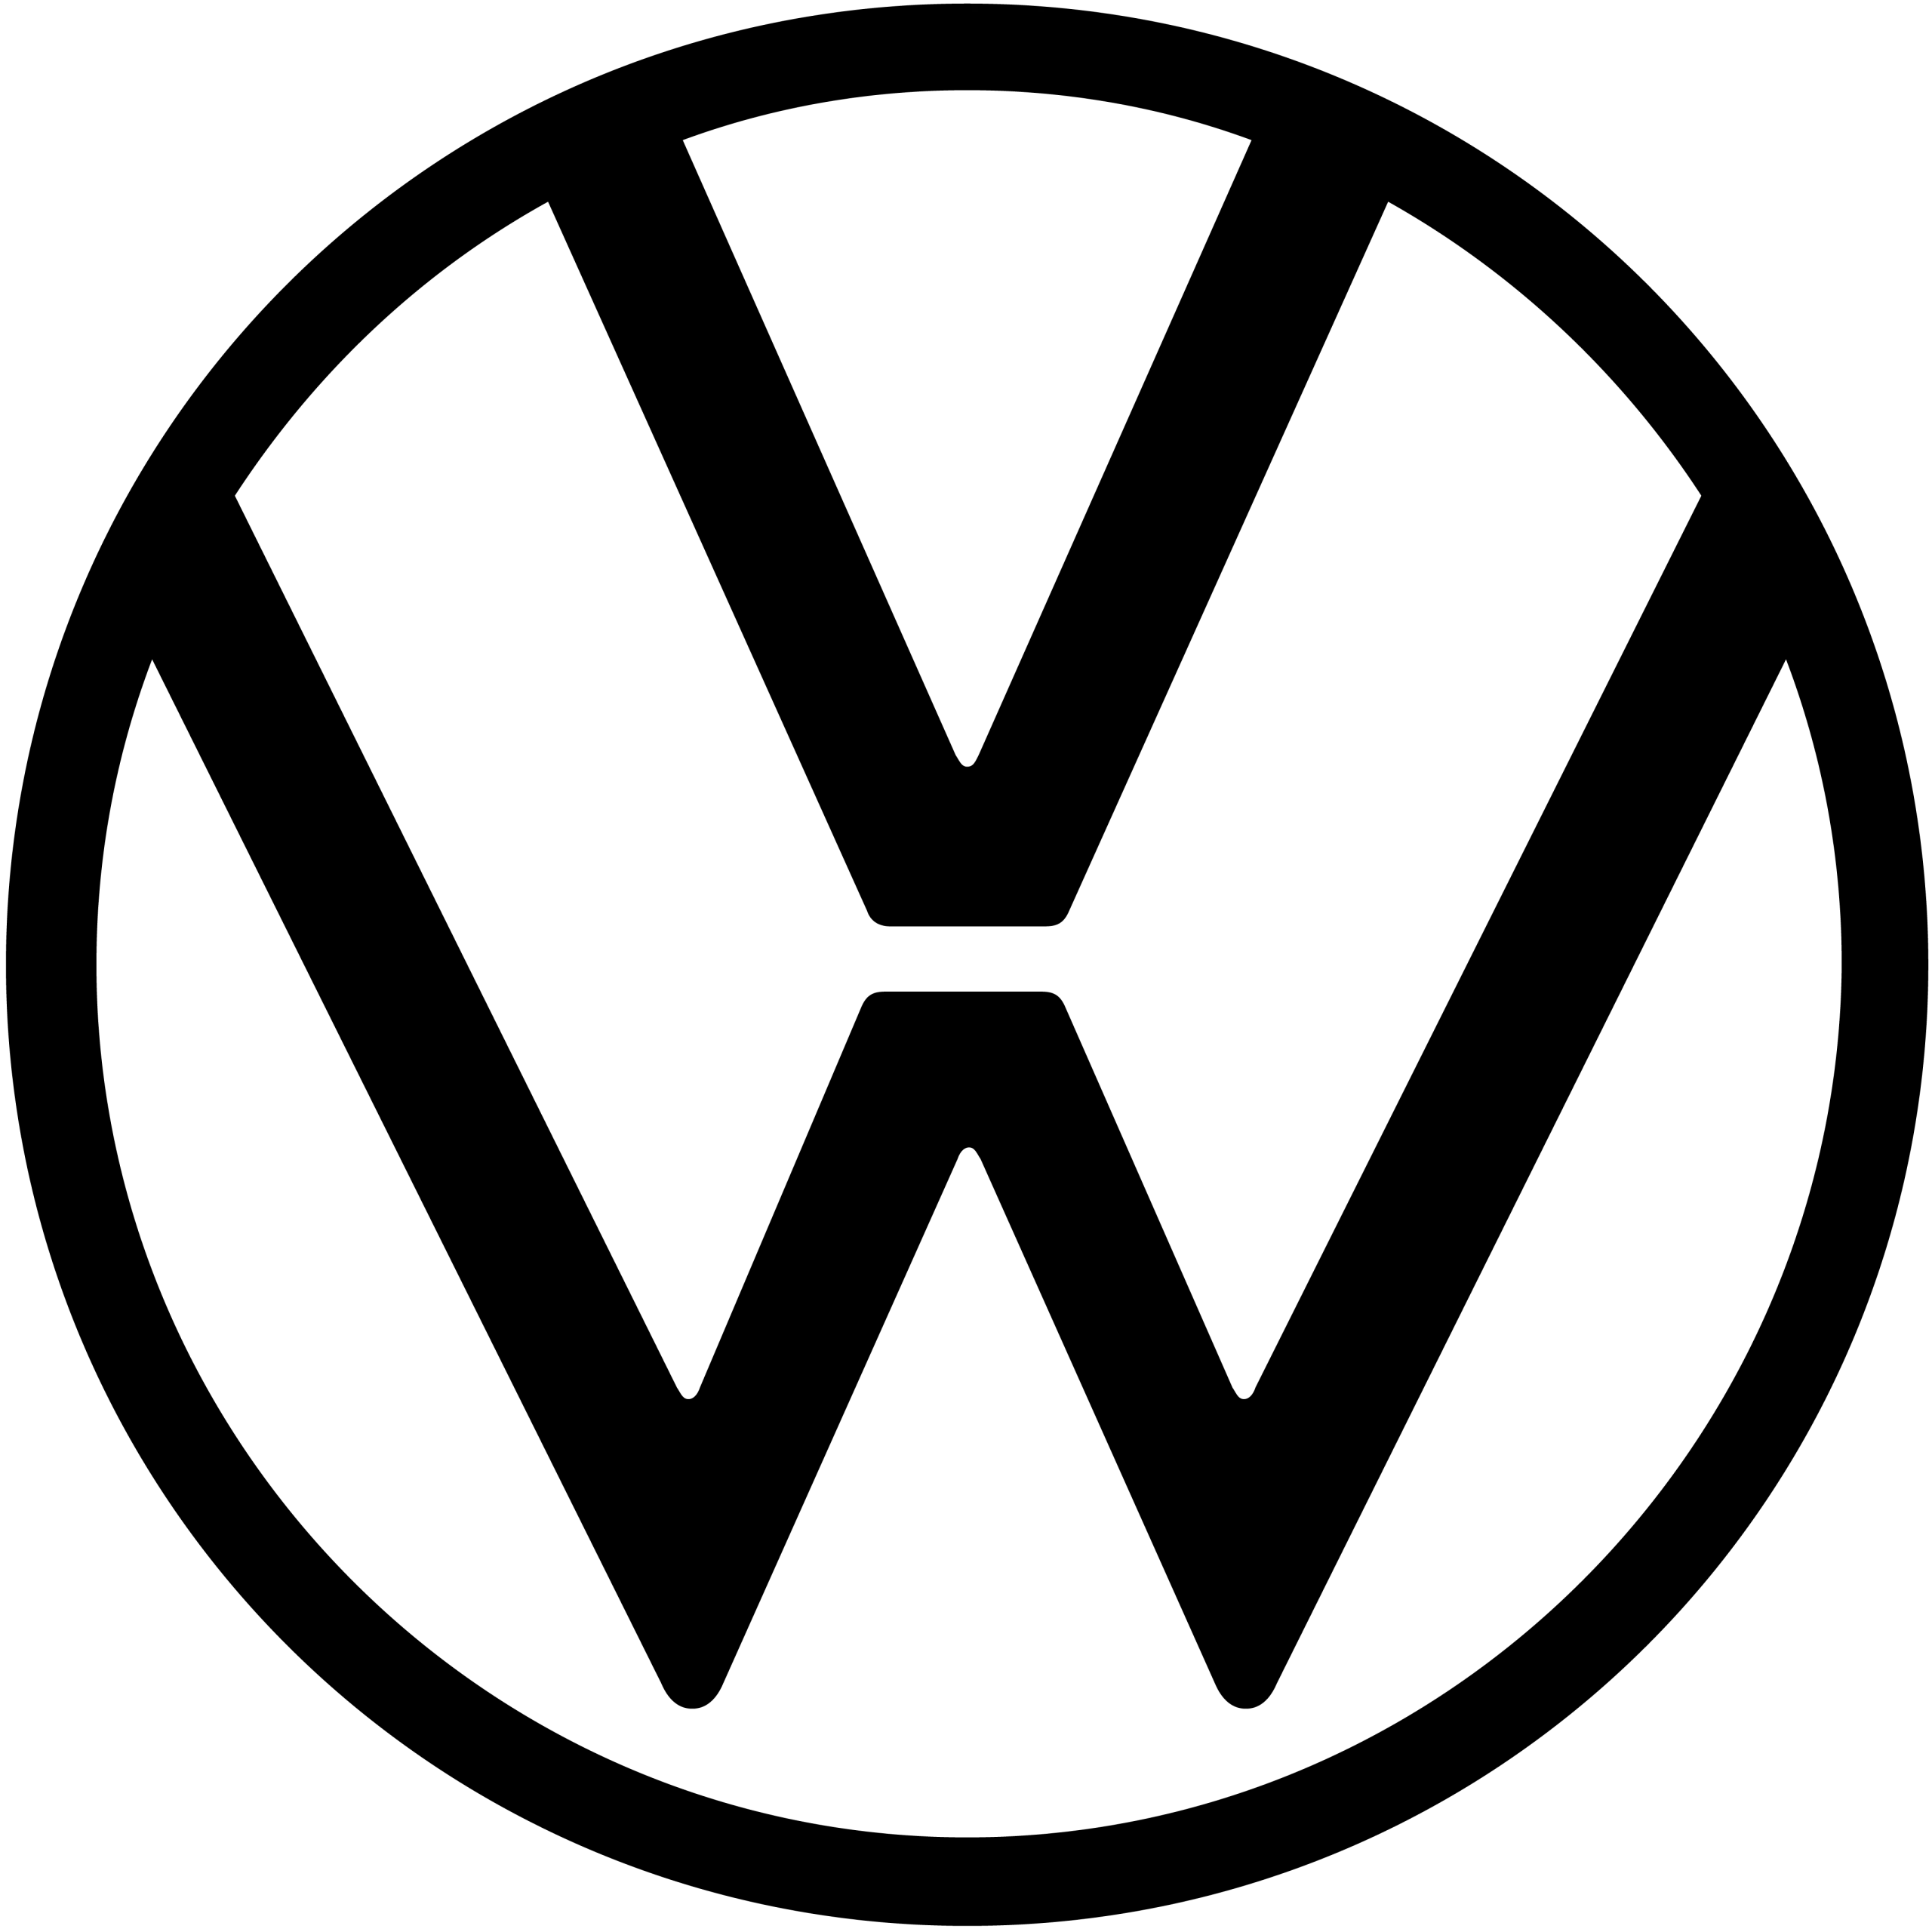 Volkswagen_logo_2019.png